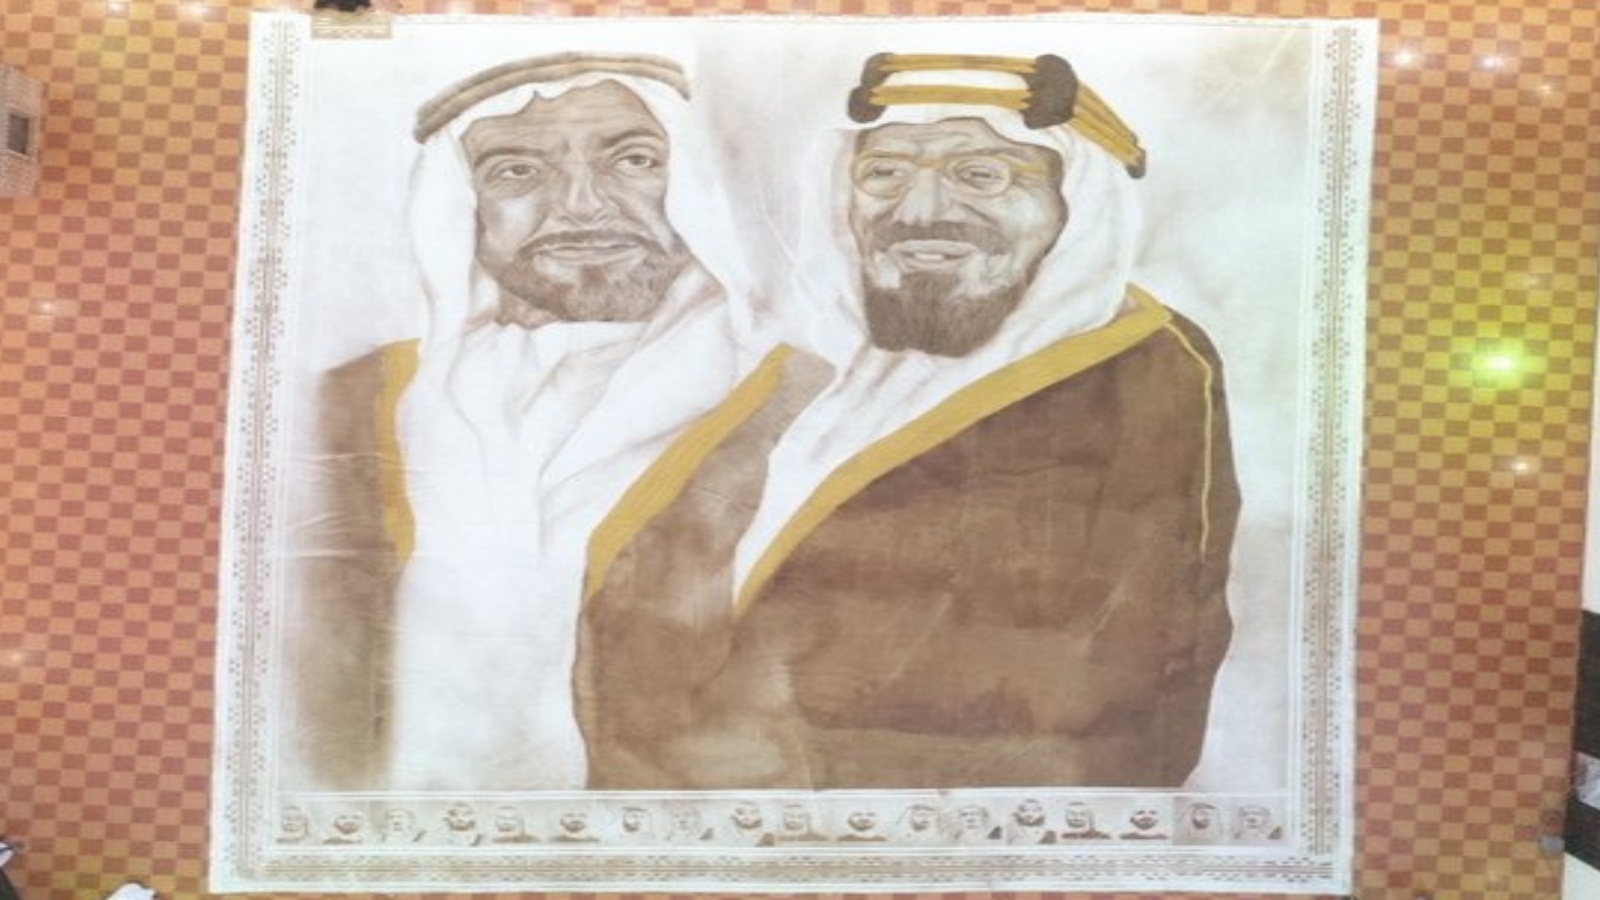 سعودية تدخل موسوعة غينيس بأكبر لوحة مرسومة بالقهوة